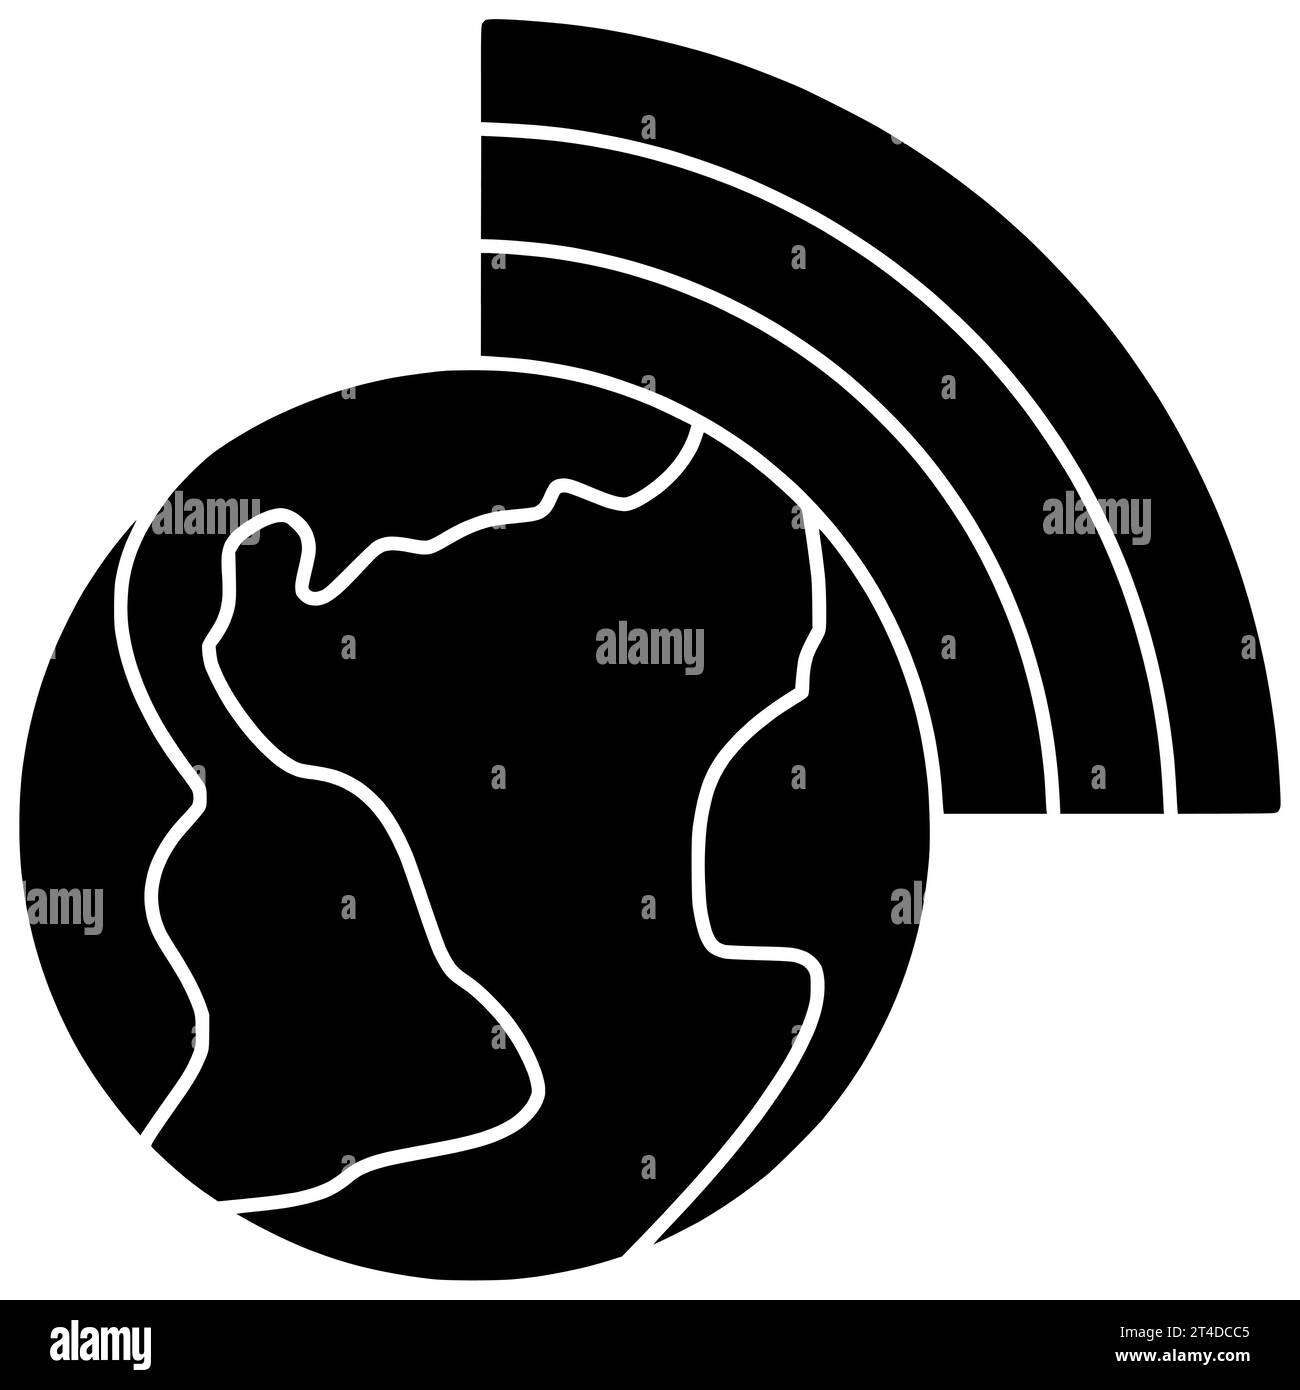 geologia bussola nera silhouette cartografia illustrazione mappa icona geografia logo posizione direzione terra topografia viaggio globo mondo terra continente scienza Foto Stock